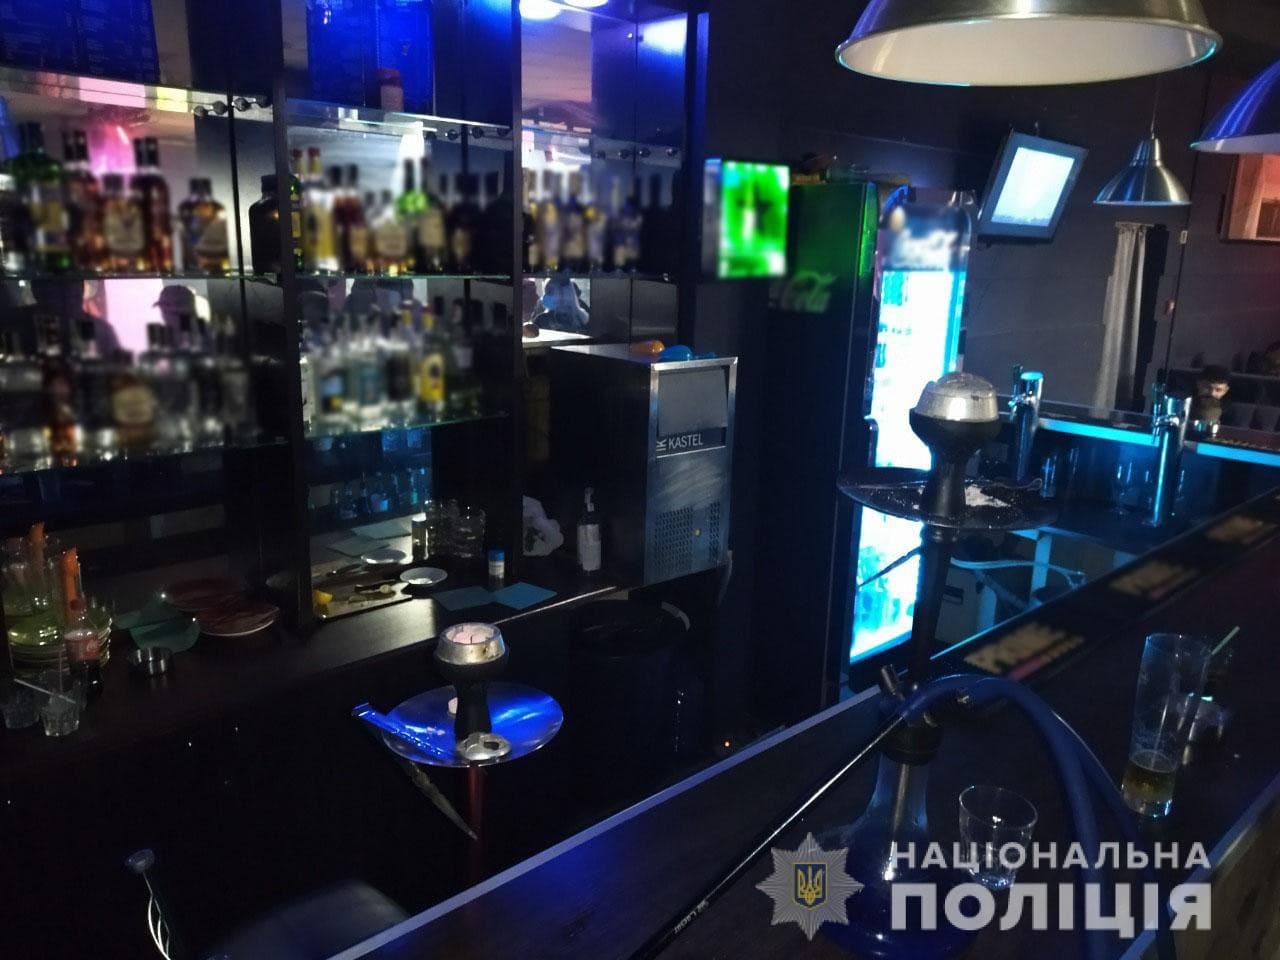 Коронавирус Харьков: В ночном клубе изъяли весь алкоголь